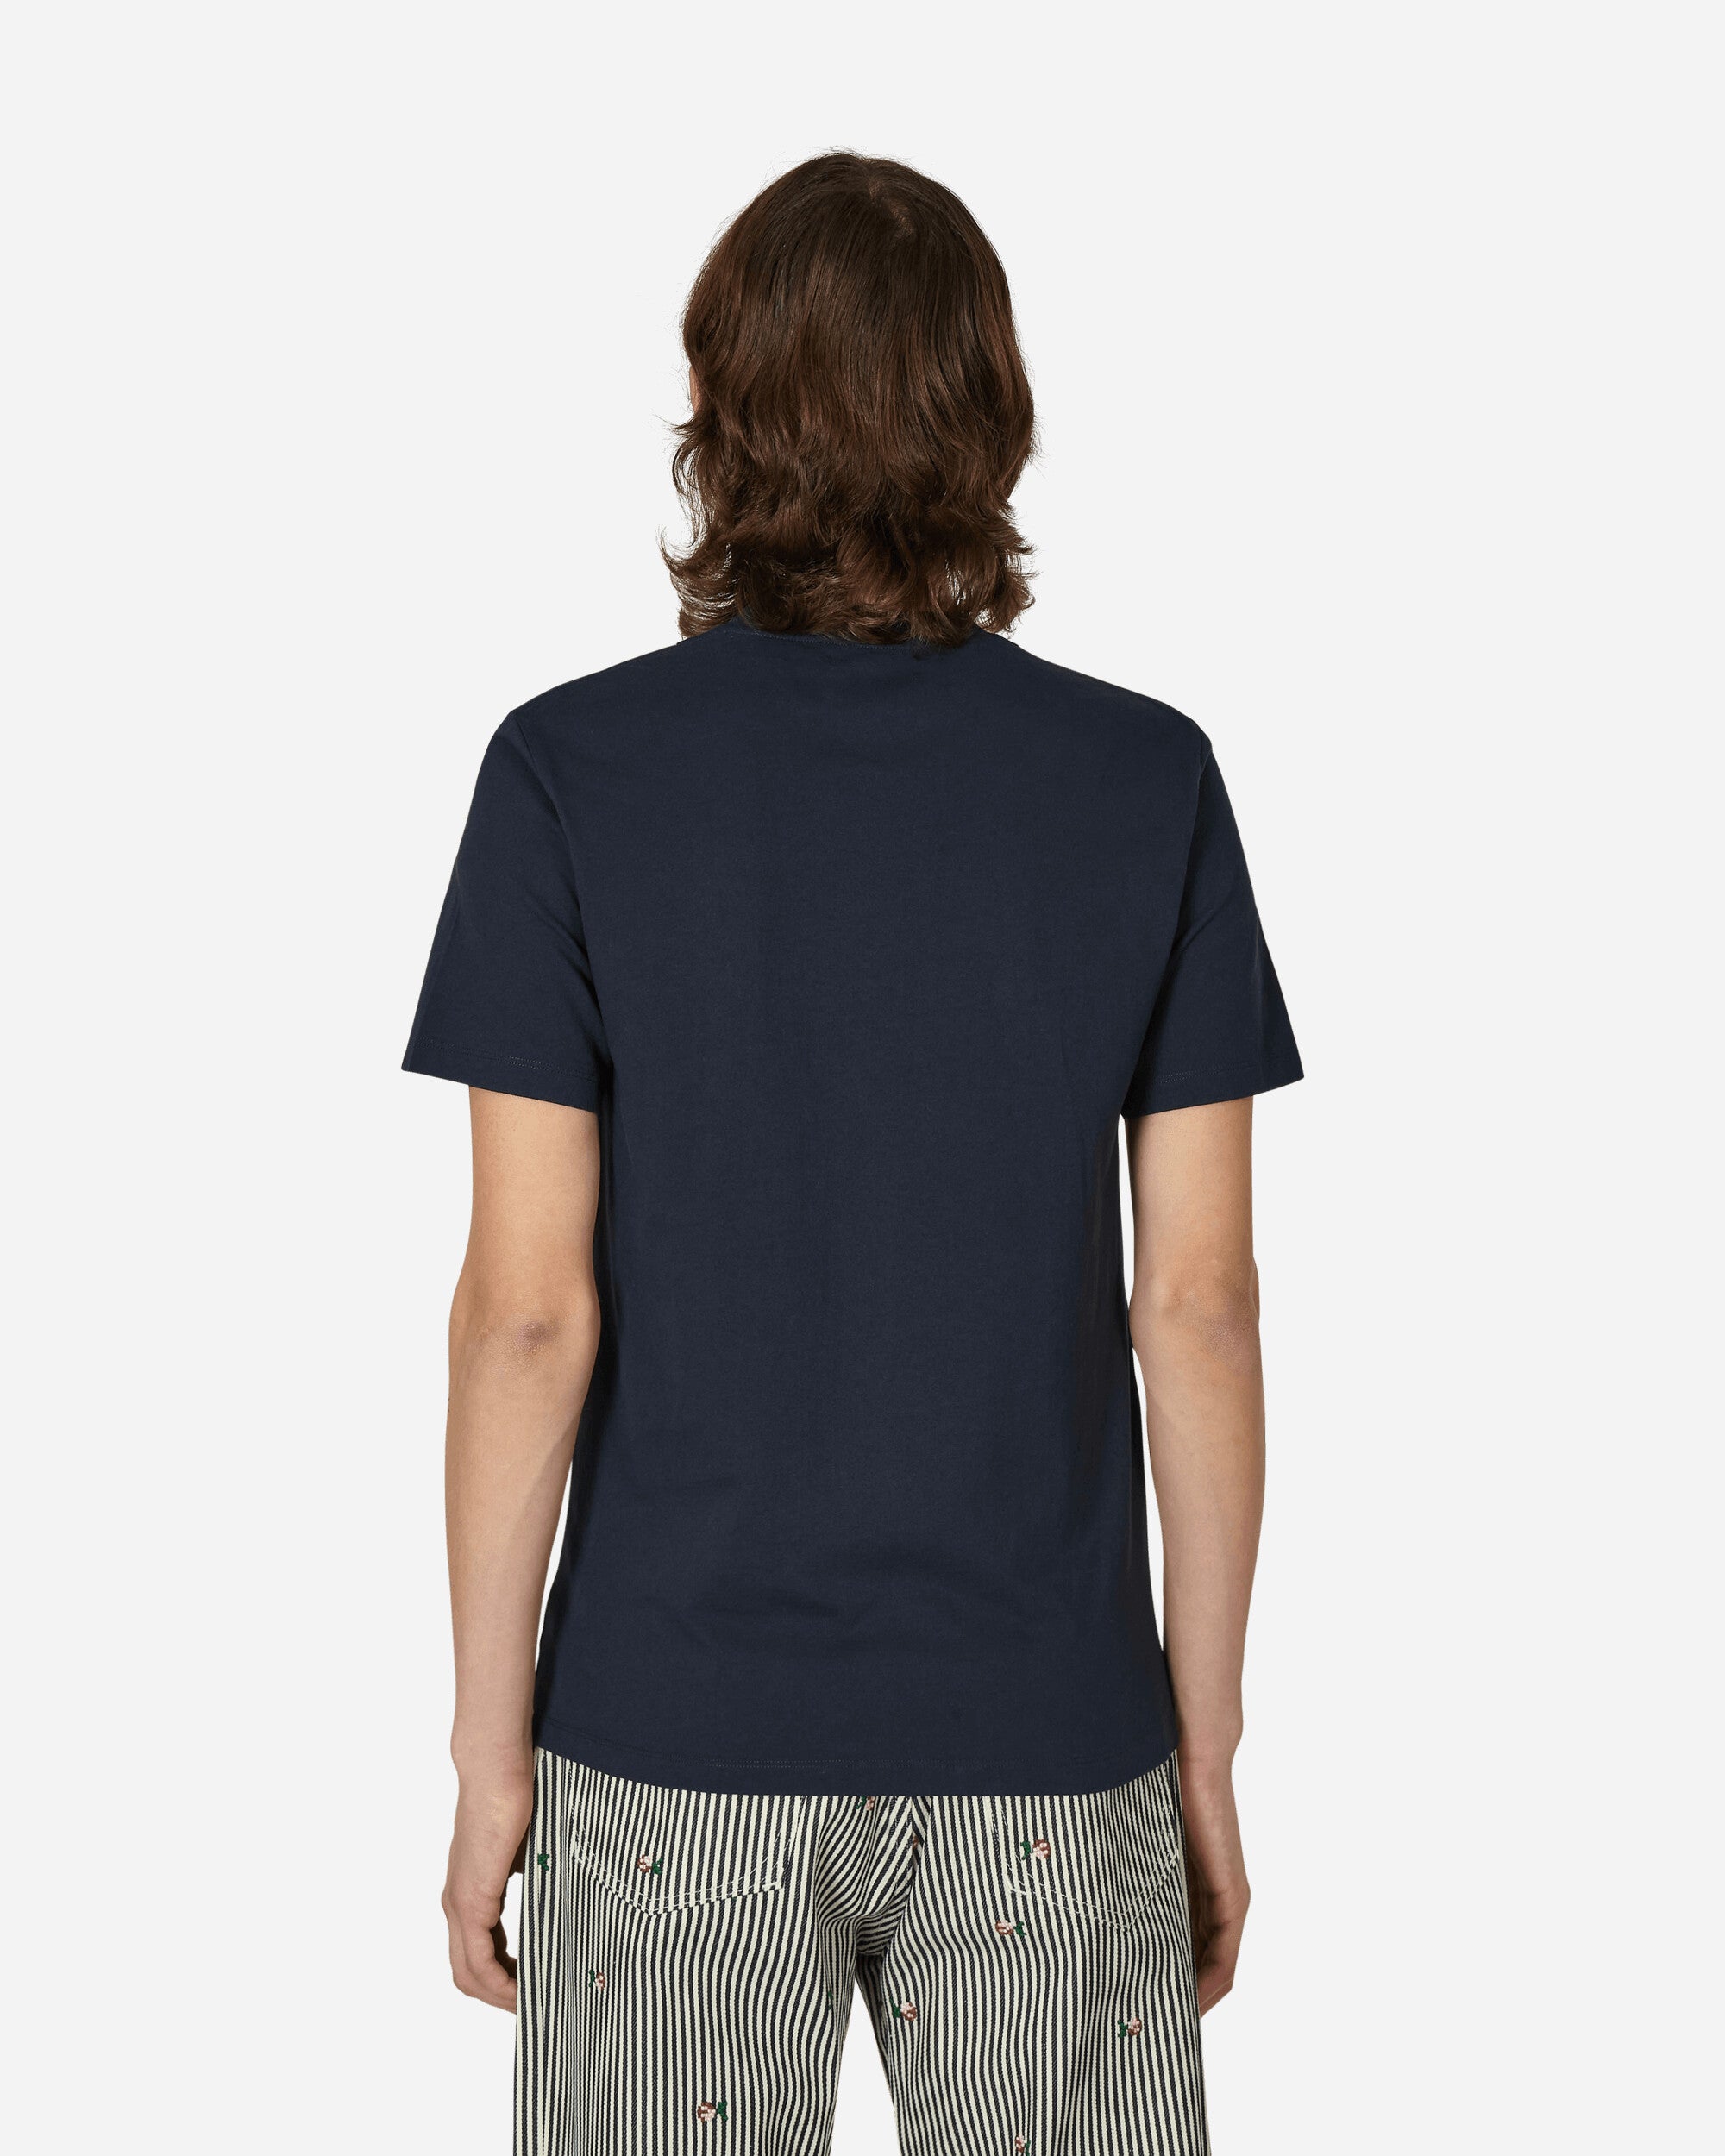 Maison Margiela T-Shirt Shades Of Navy T-Shirts Shortsleeve S50GC0687 966